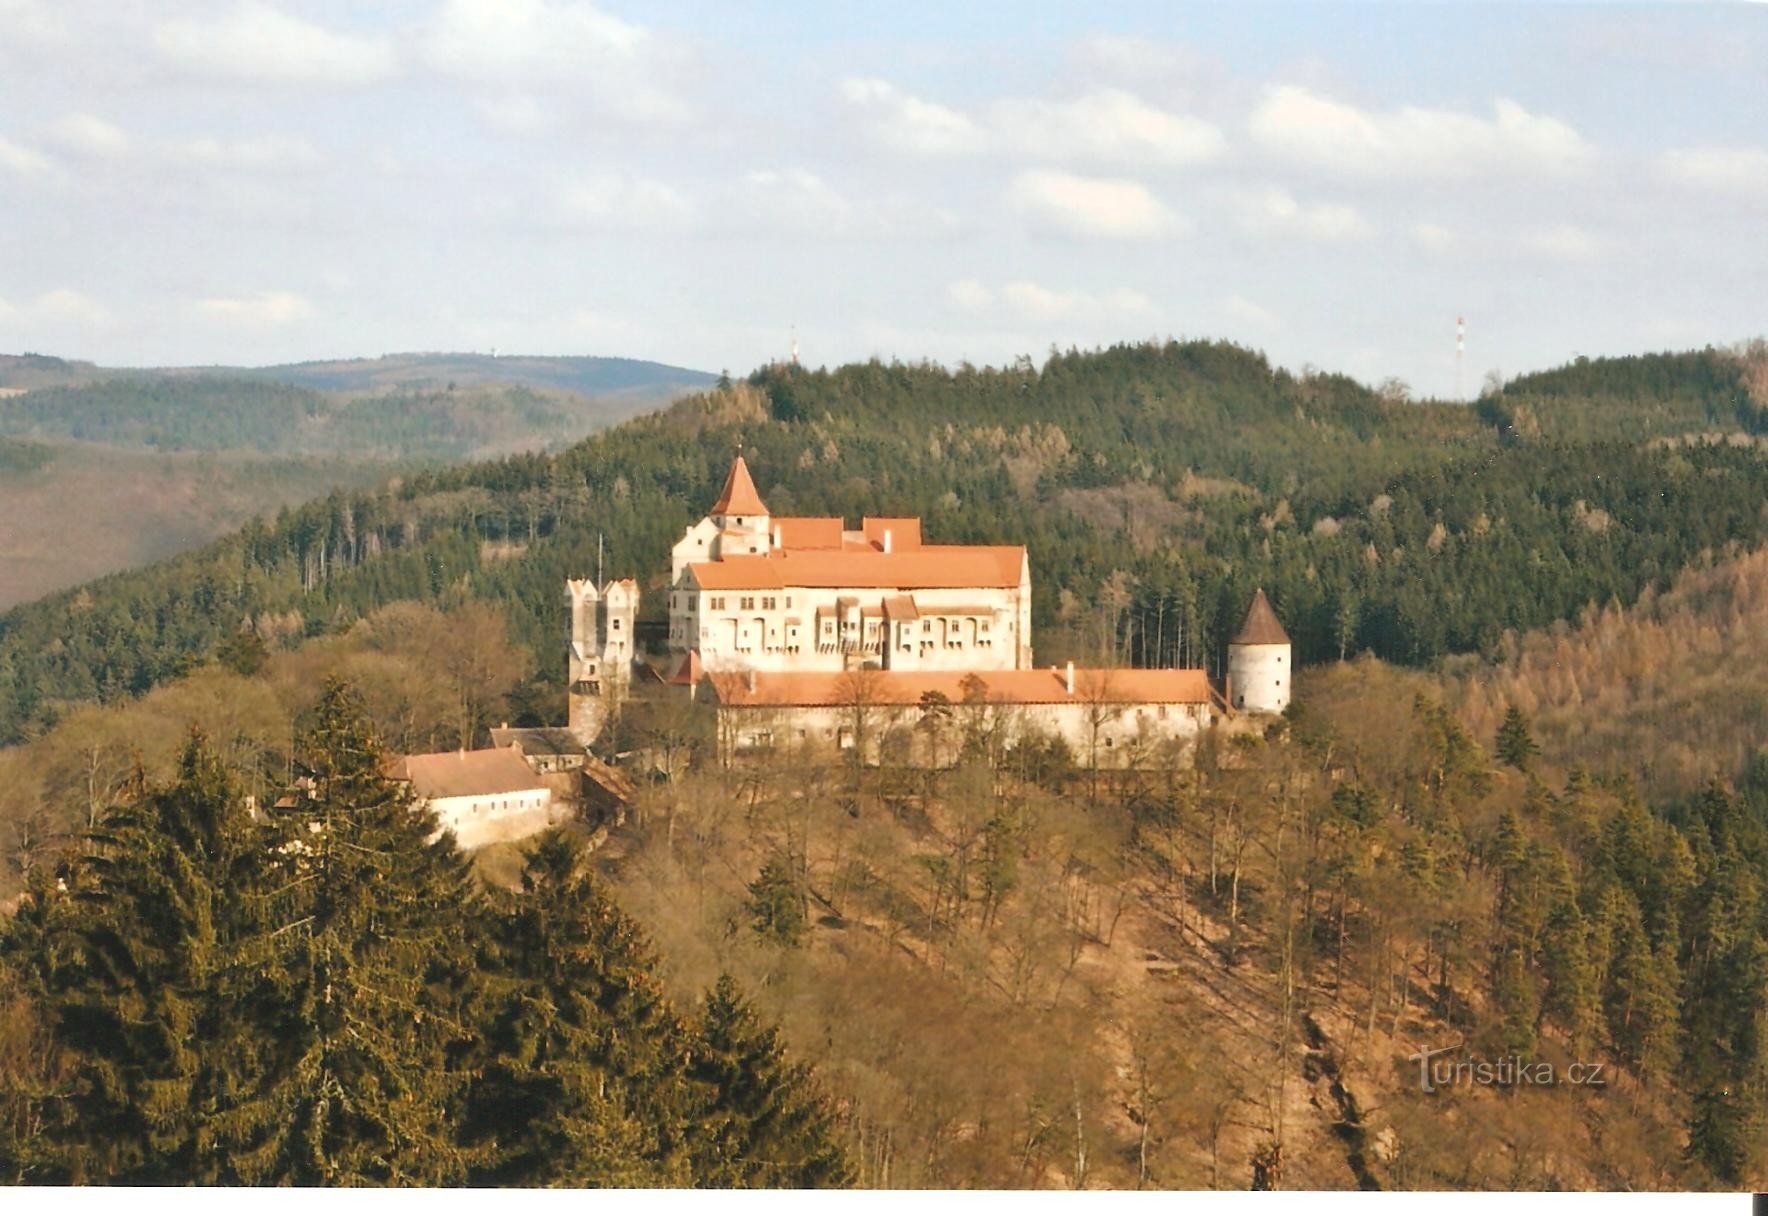 Marenčino loubí - vedere la Castelul Pernštejn la sfârșitul toamnei anului 2008